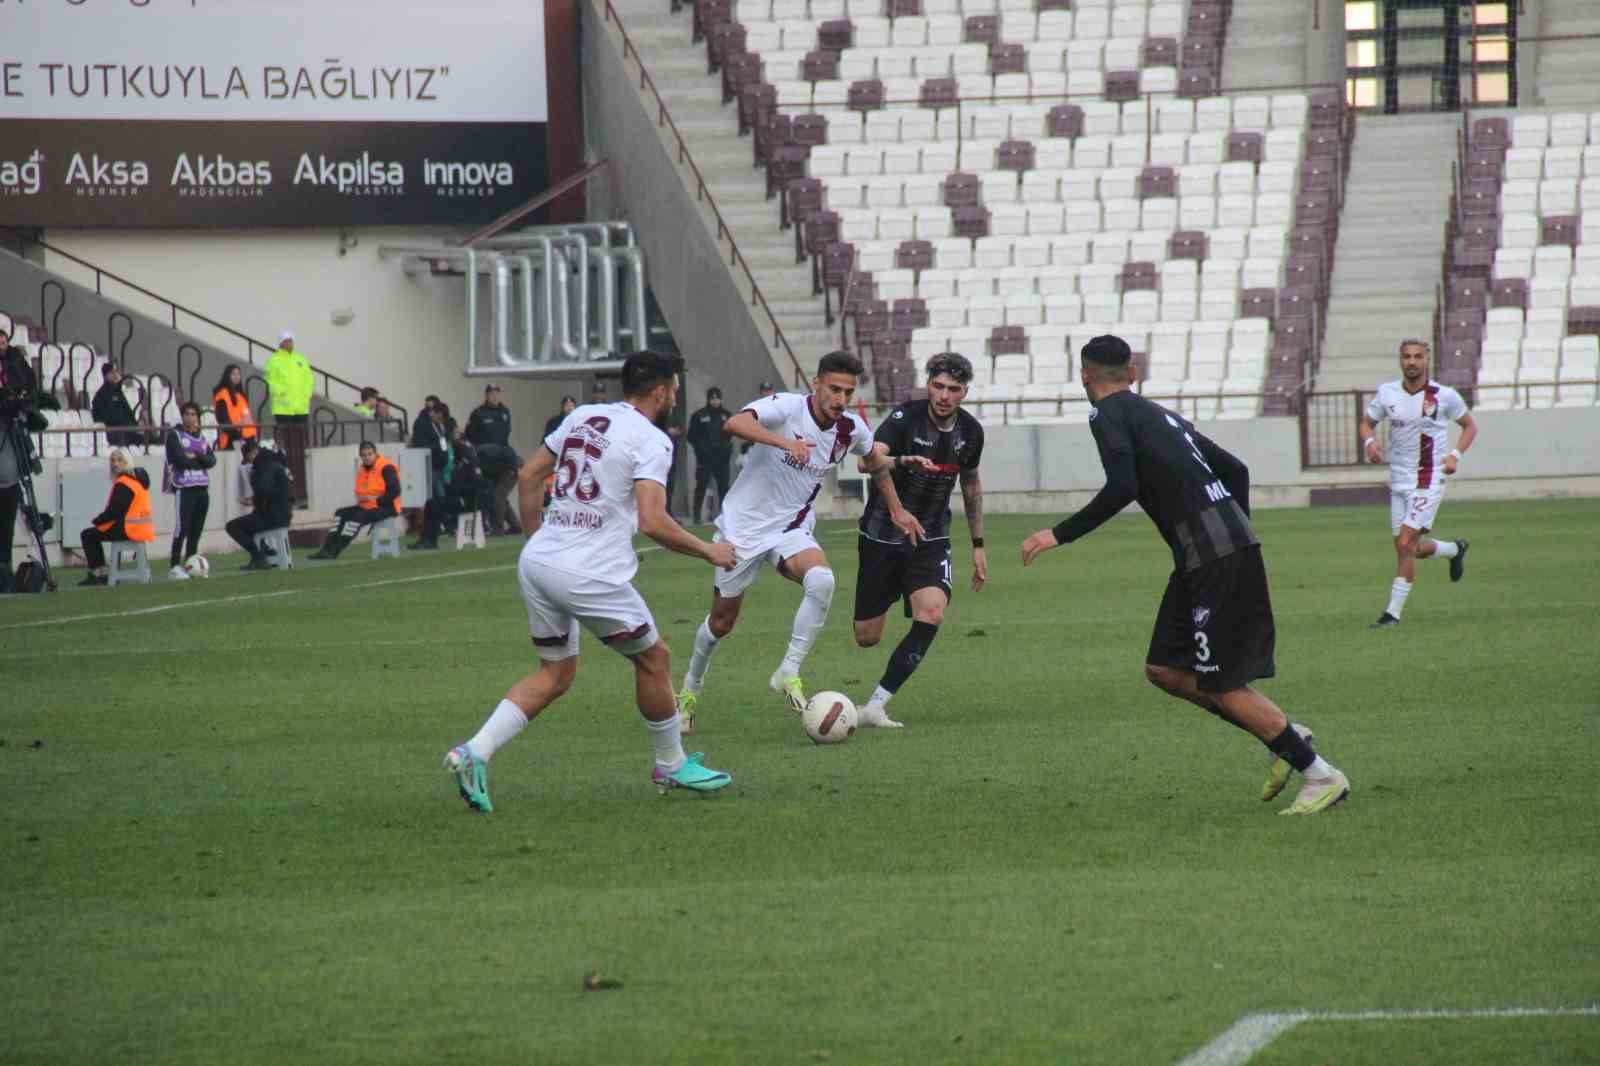 TFF 3. Lig: Elazığspor: 2 - Hacettepe 1945: 0
